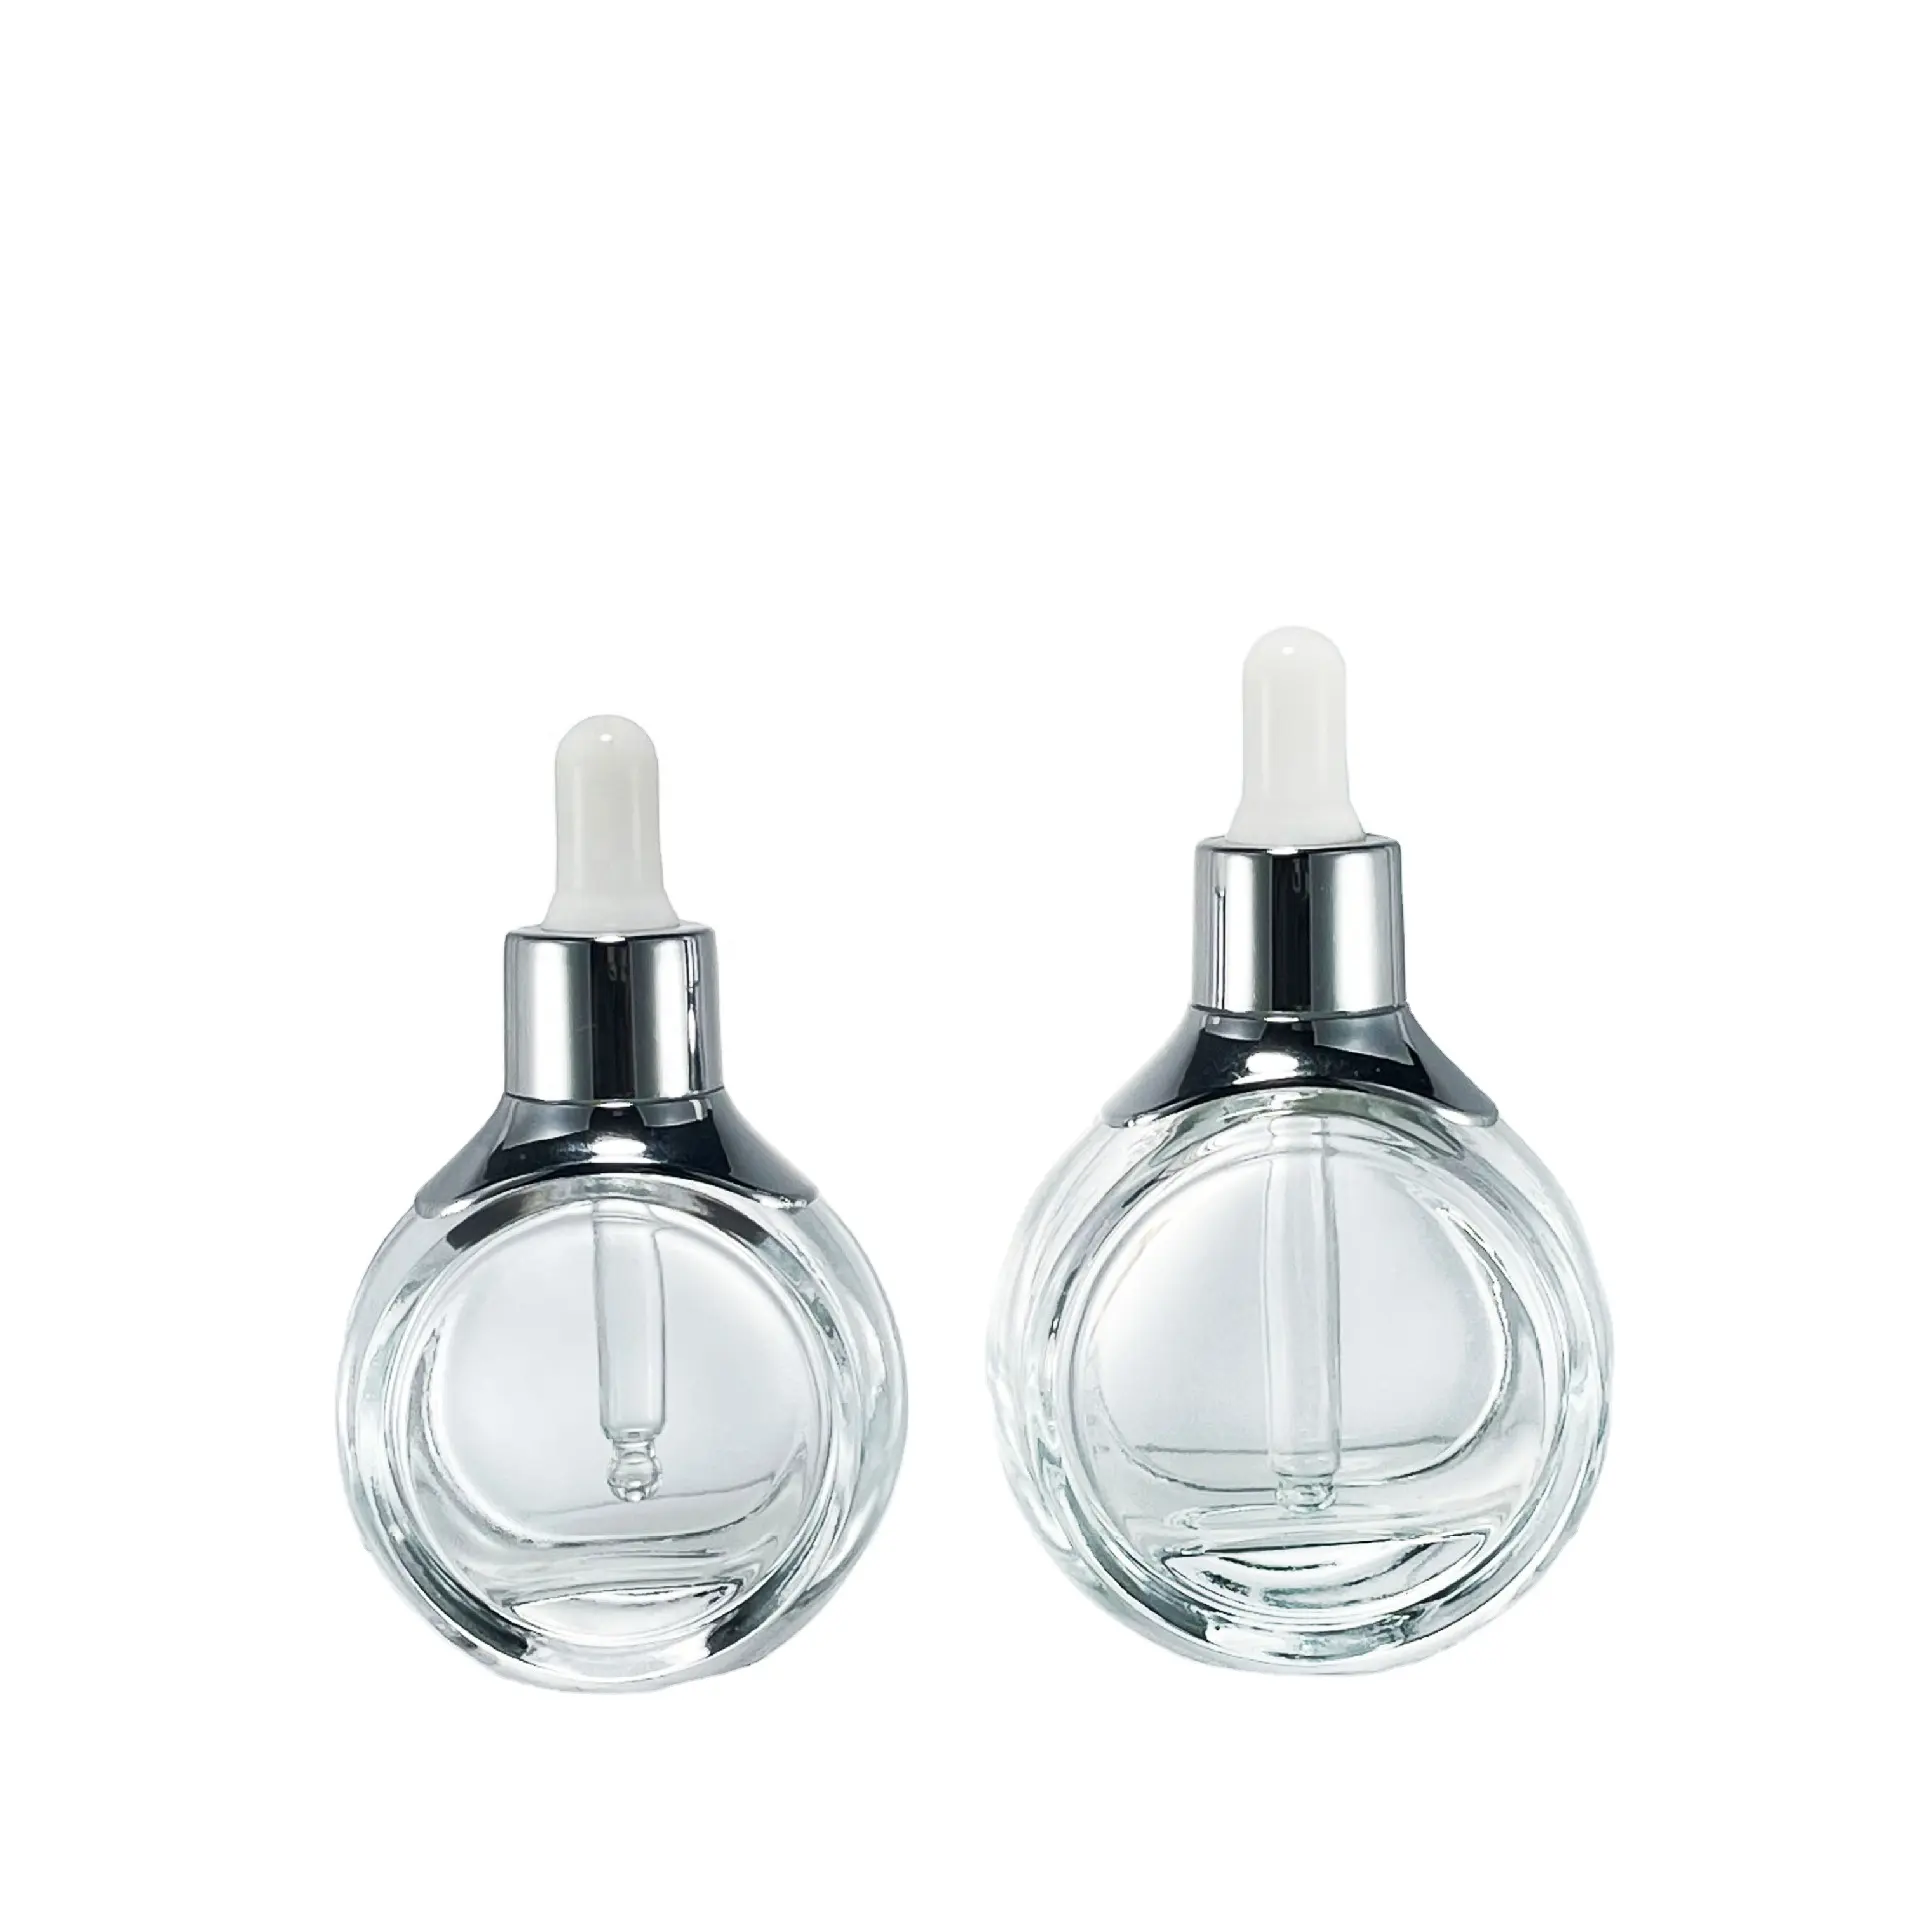 Botol minyak parfum berbentuk bola 30Ml 1oz botol minyak parfum 1.7flGlass Dropper botol minyak Serum kosmetik transparan dengan penetes